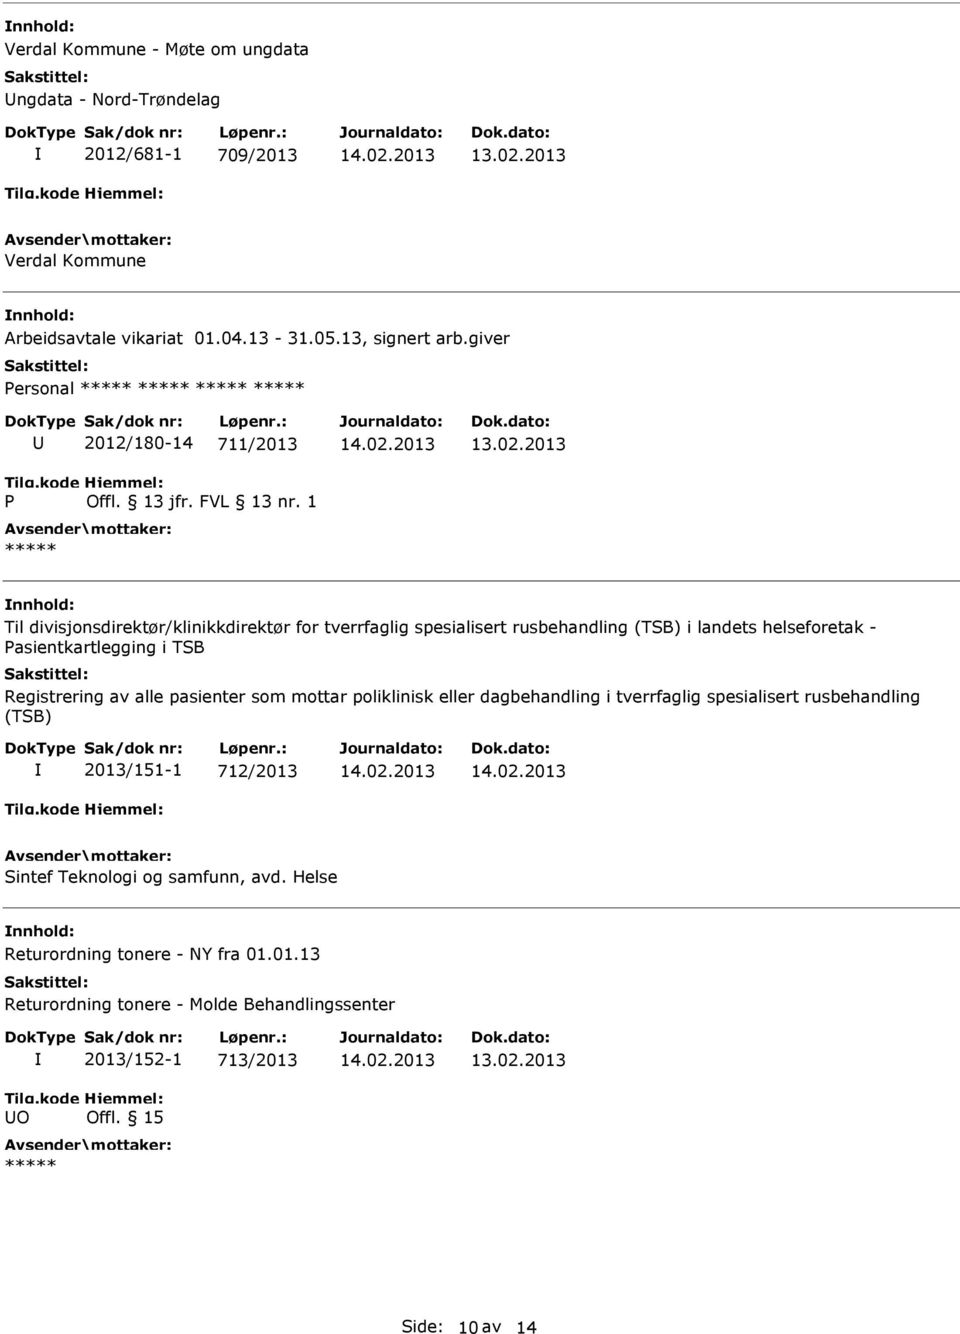 asientkartlegging i TSB Registrering av alle pasienter som mottar poliklinisk eller dagbehandling i tverrfaglig spesialisert rusbehandling (TSB) 2013/151-1